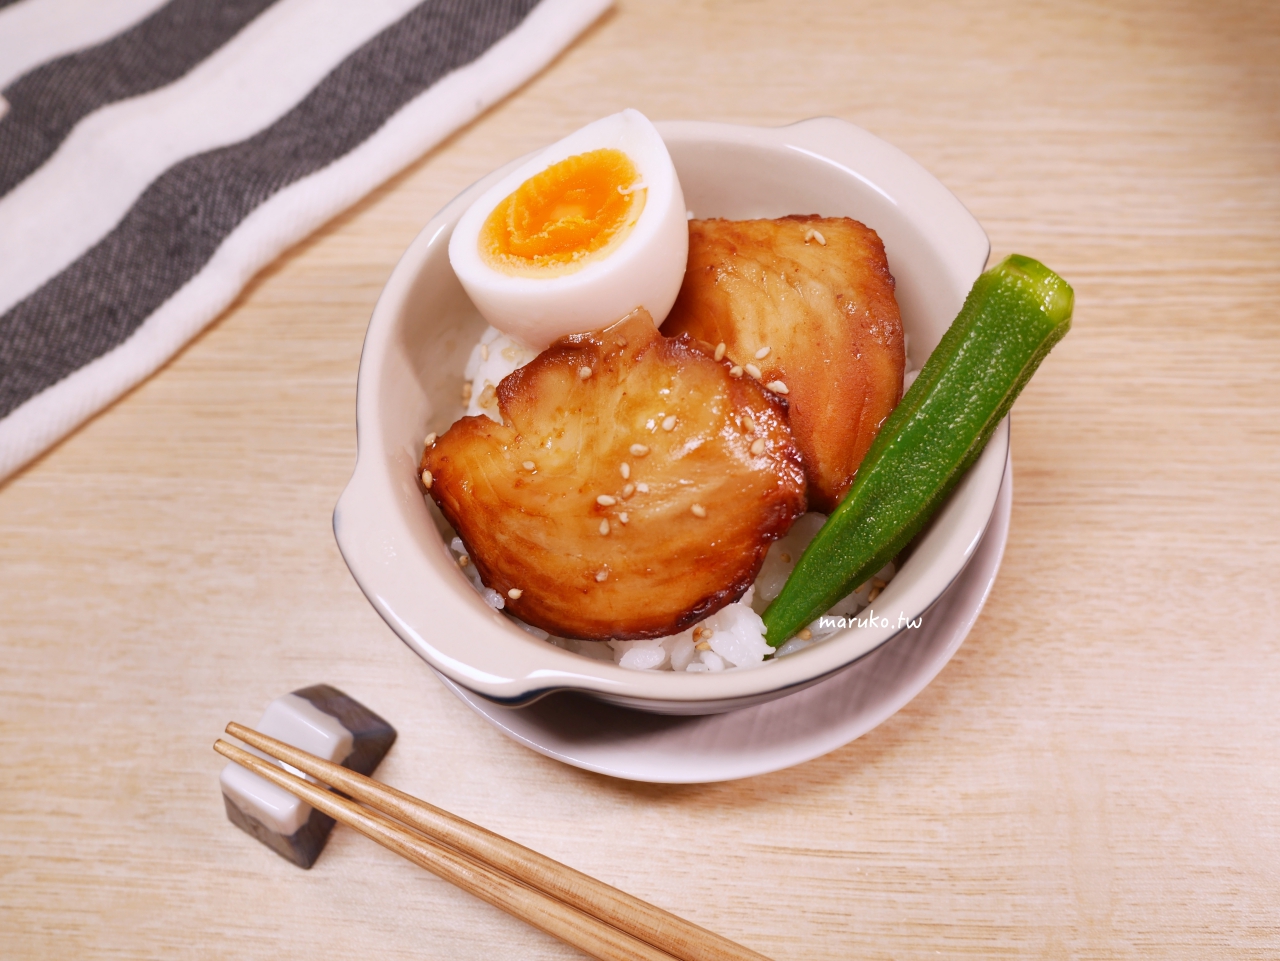 【食譜】越南生春捲｜夏日涼爽低卡路里的午餐做法 @Maruko與美食有個約會